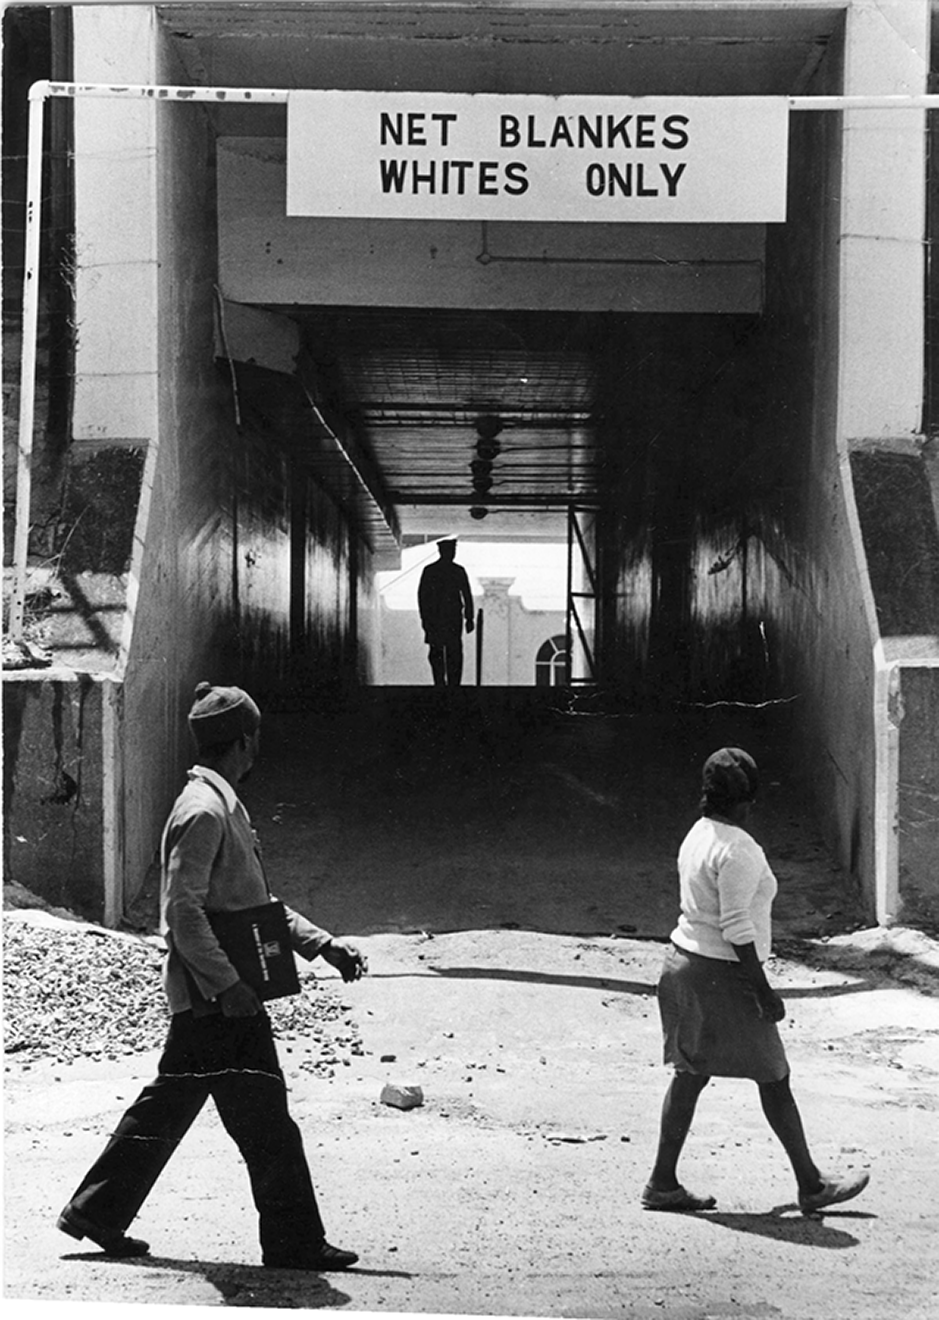 Fotografia em preto e branco. Um homem e uma mulher negra estão caminhando e olhando na direção de um túnel com a placa: NET BLANKES WHITES ONLY.